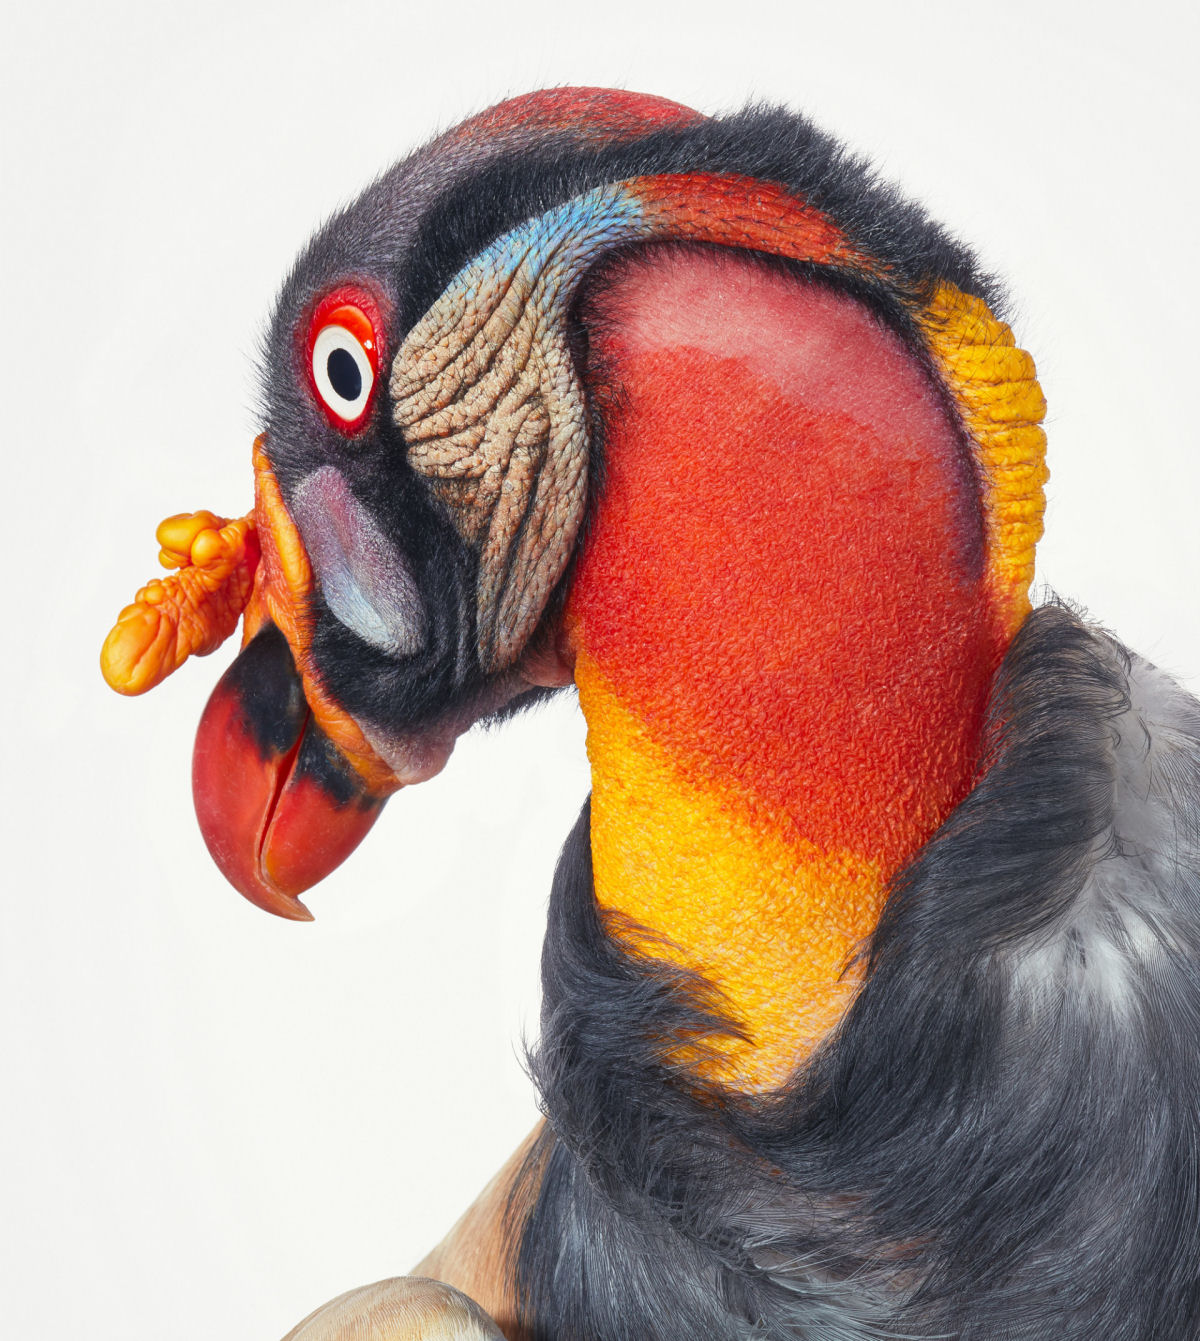 Fotógrafo londrino destaca pássaros incomuns e ameaçados de extinção em retratos impressionantes 07